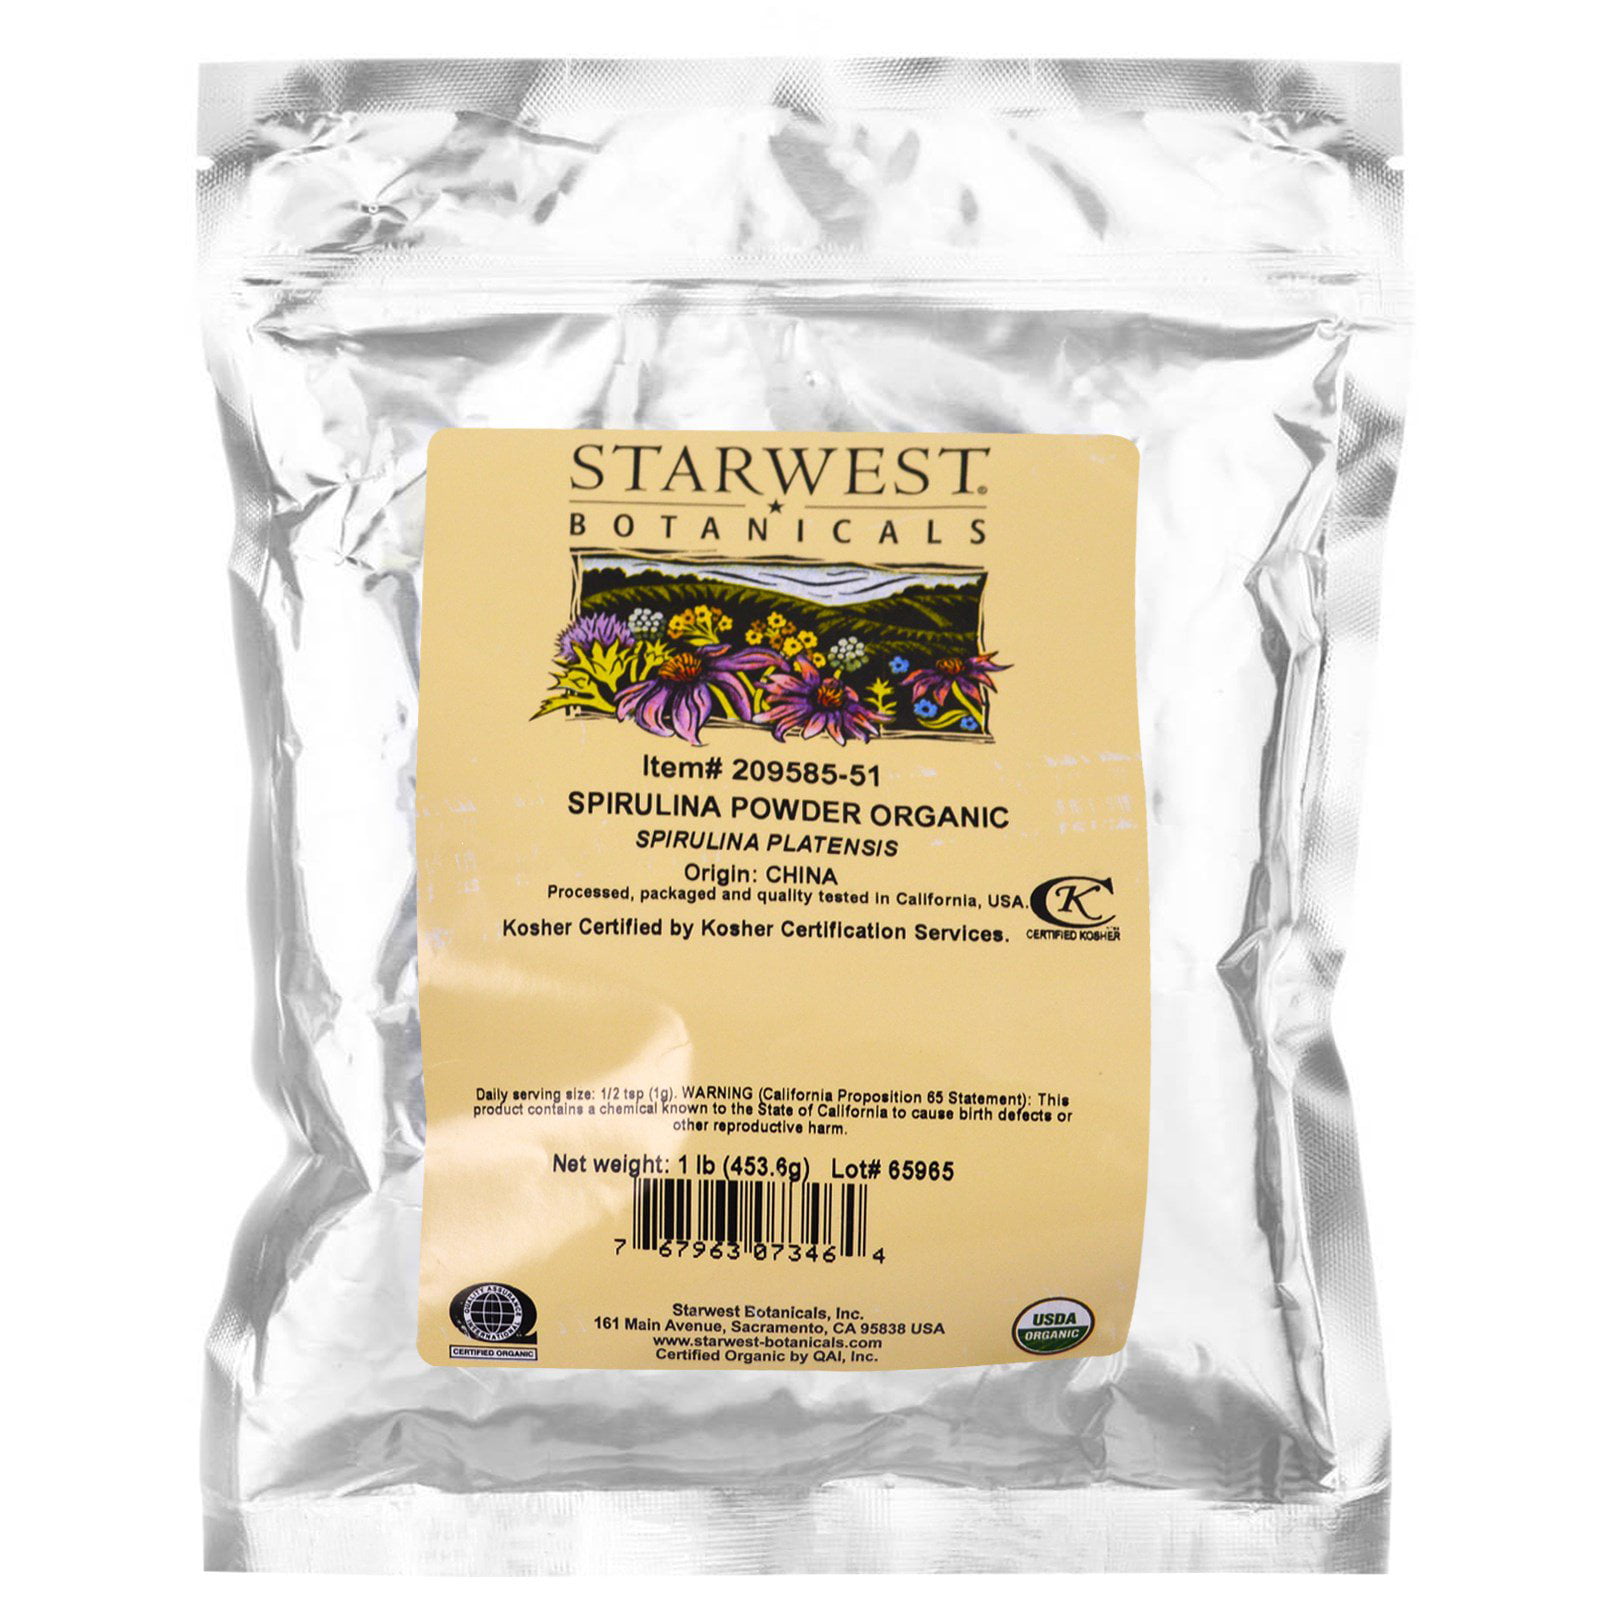 Starwest Botanicals Spirulina Powder, Organic, 1 lb (453.6 g) - Walmart